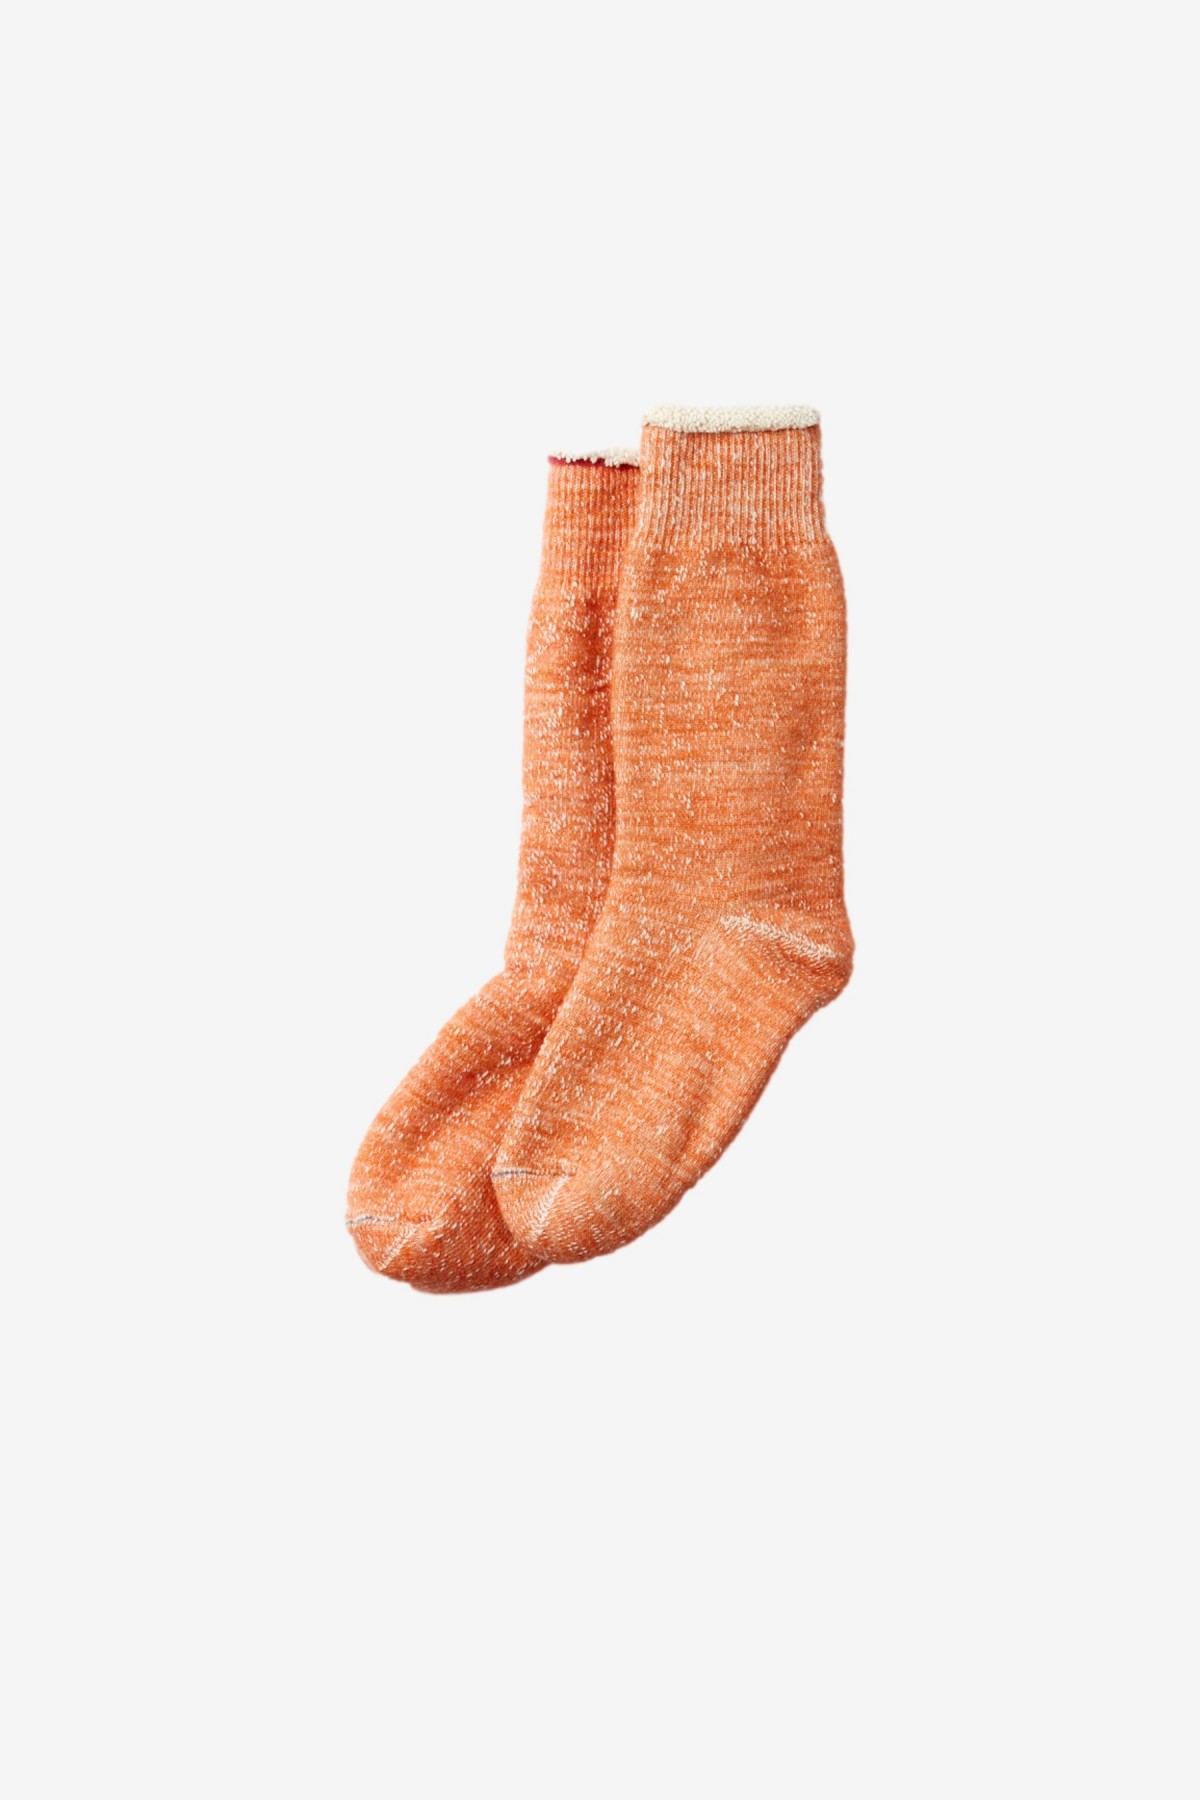 RoToTo Double Face Socks in Orange